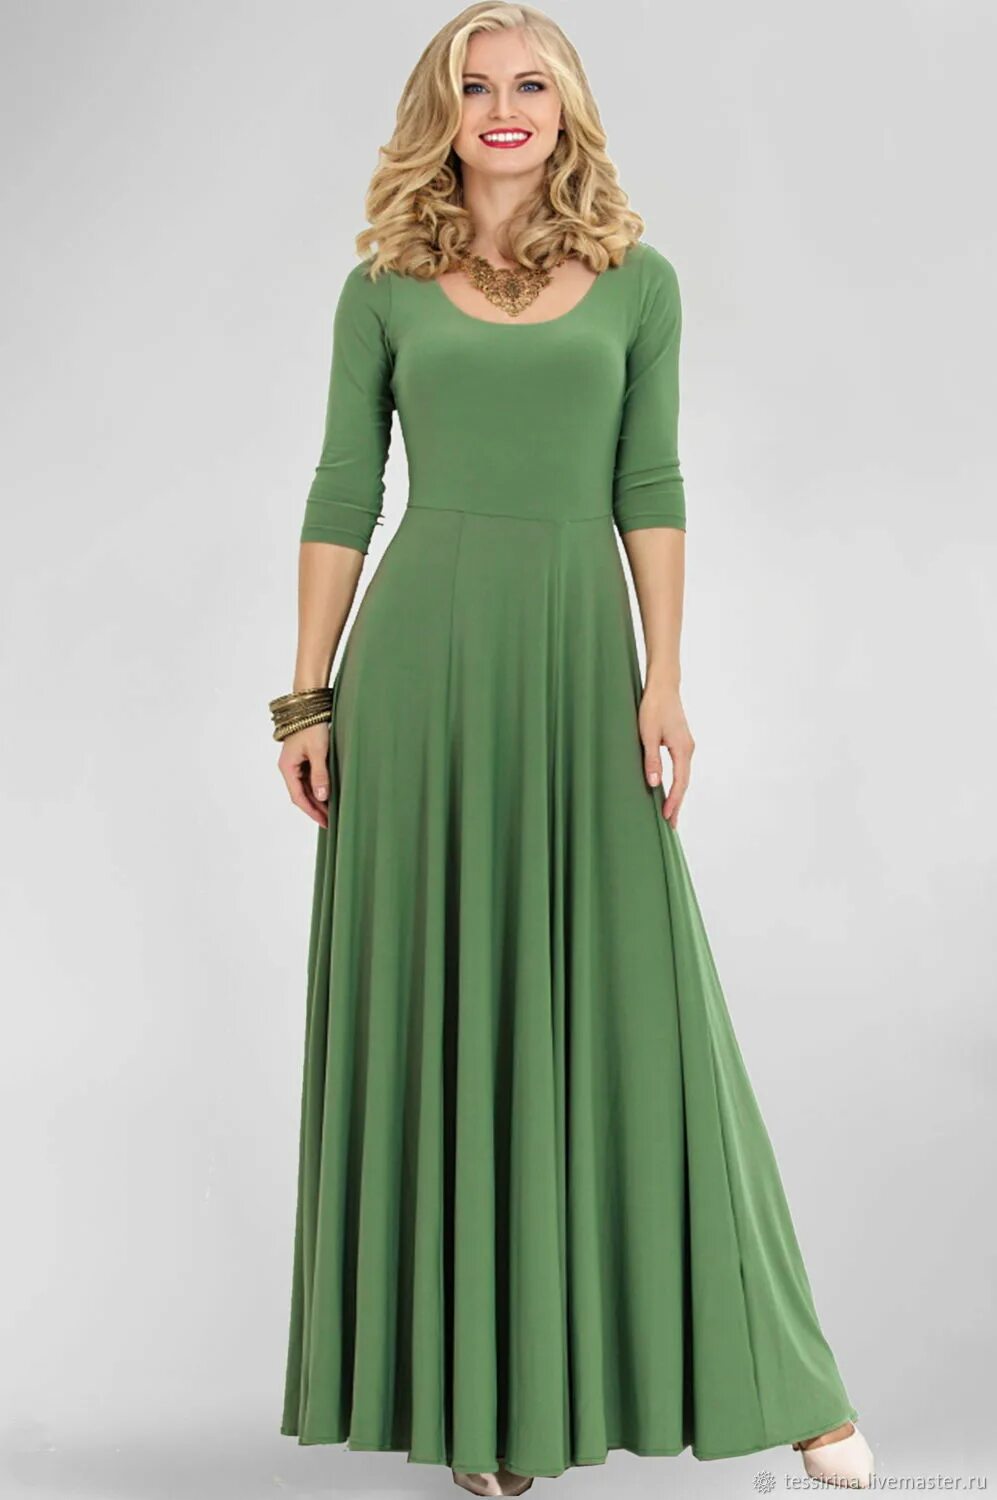 Модели длинных рукавов. Зеленое платье. Длинное трикотажное платье. Длинное платье из трикотажа. Красивое зеленое платье.